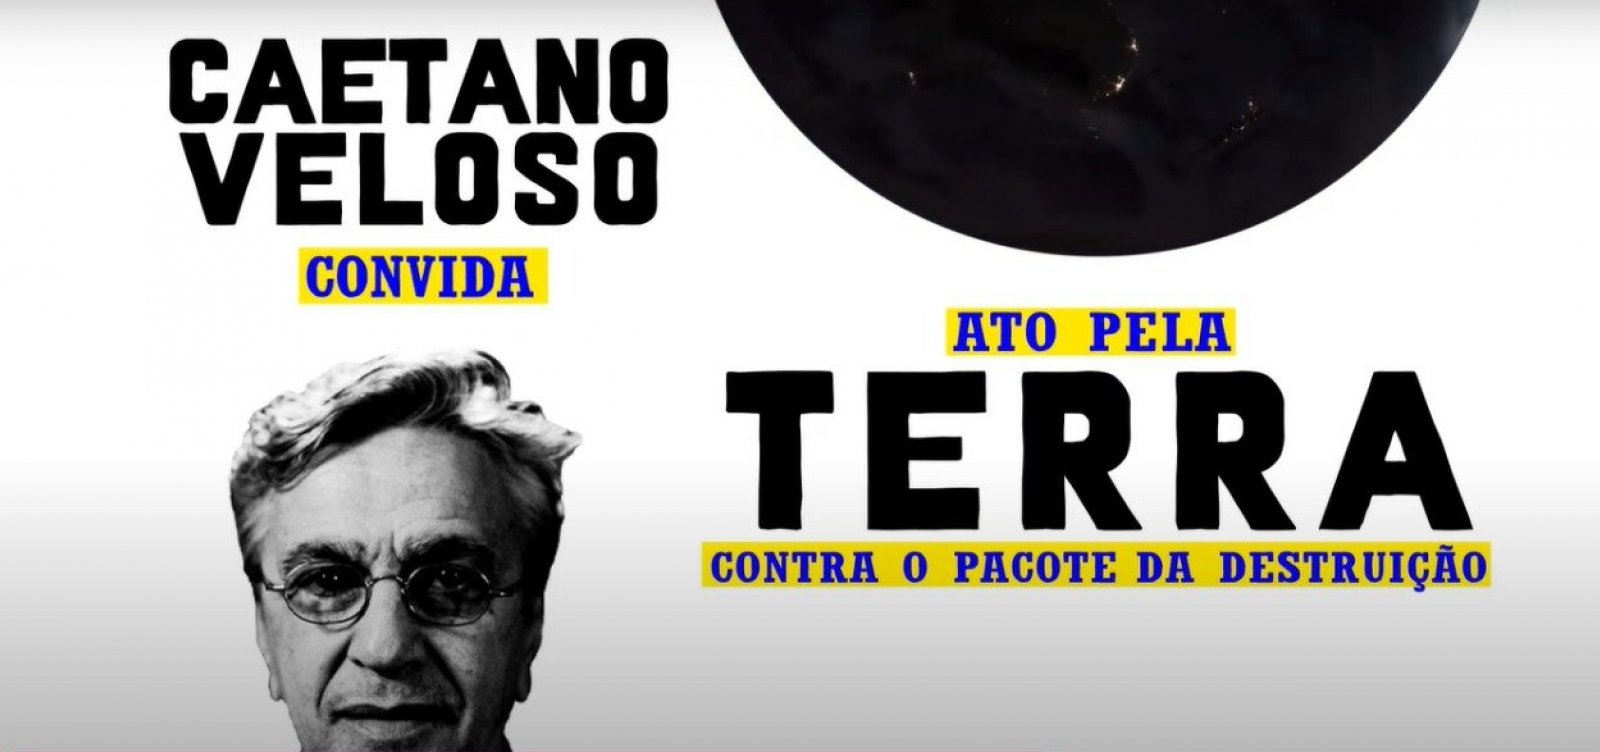 Caetano Veloso promove ato contra "Pacote da Destruição" em frente ao Congresso Nacional